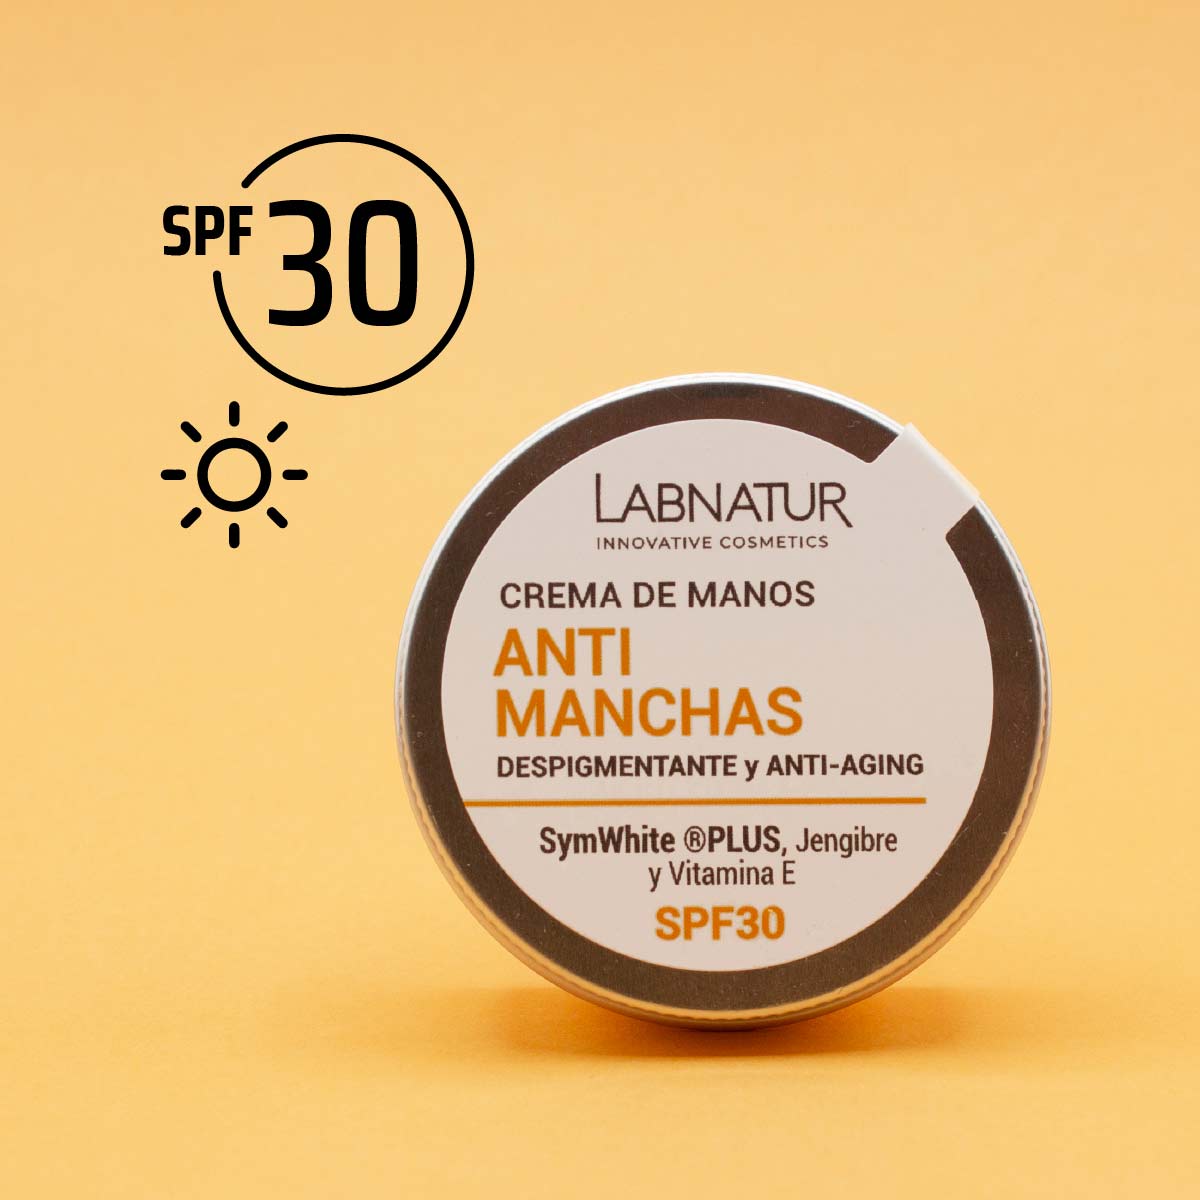 Spf 30 crema antimanchas despigmentante 50ml labnatur